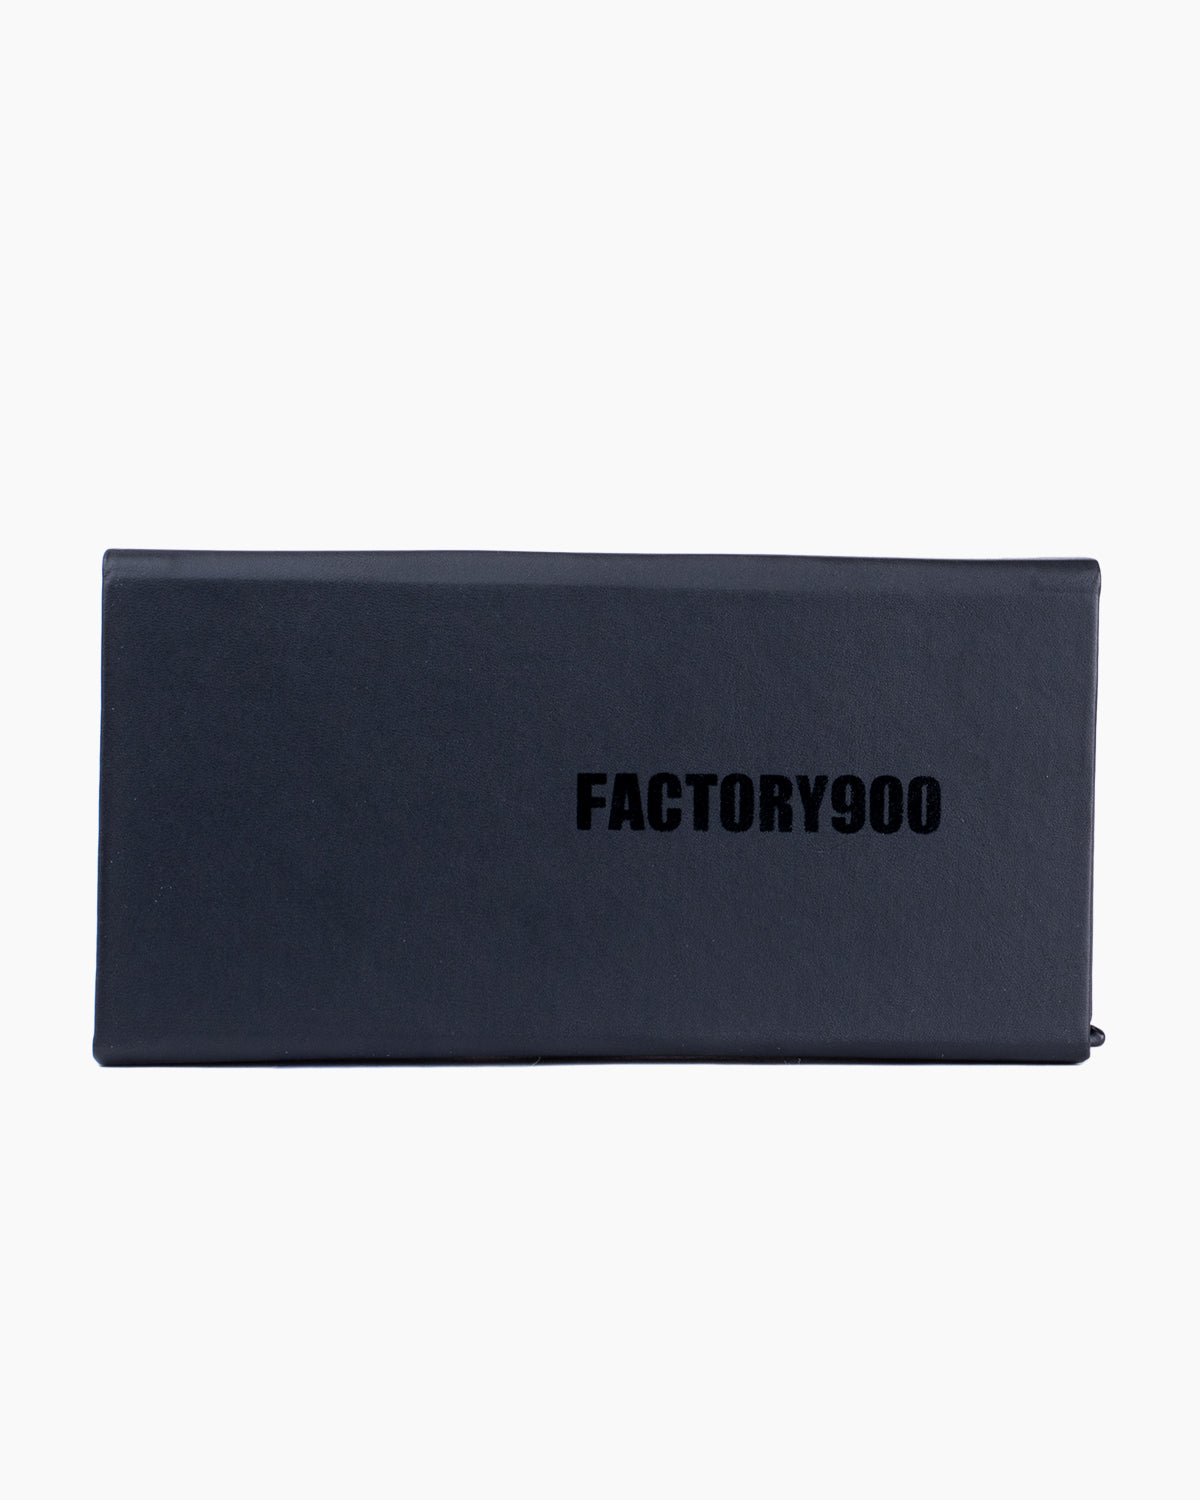 Factory 900 - RF-141 - 577 | Bar à lunettes:  Marie-Sophie Dion